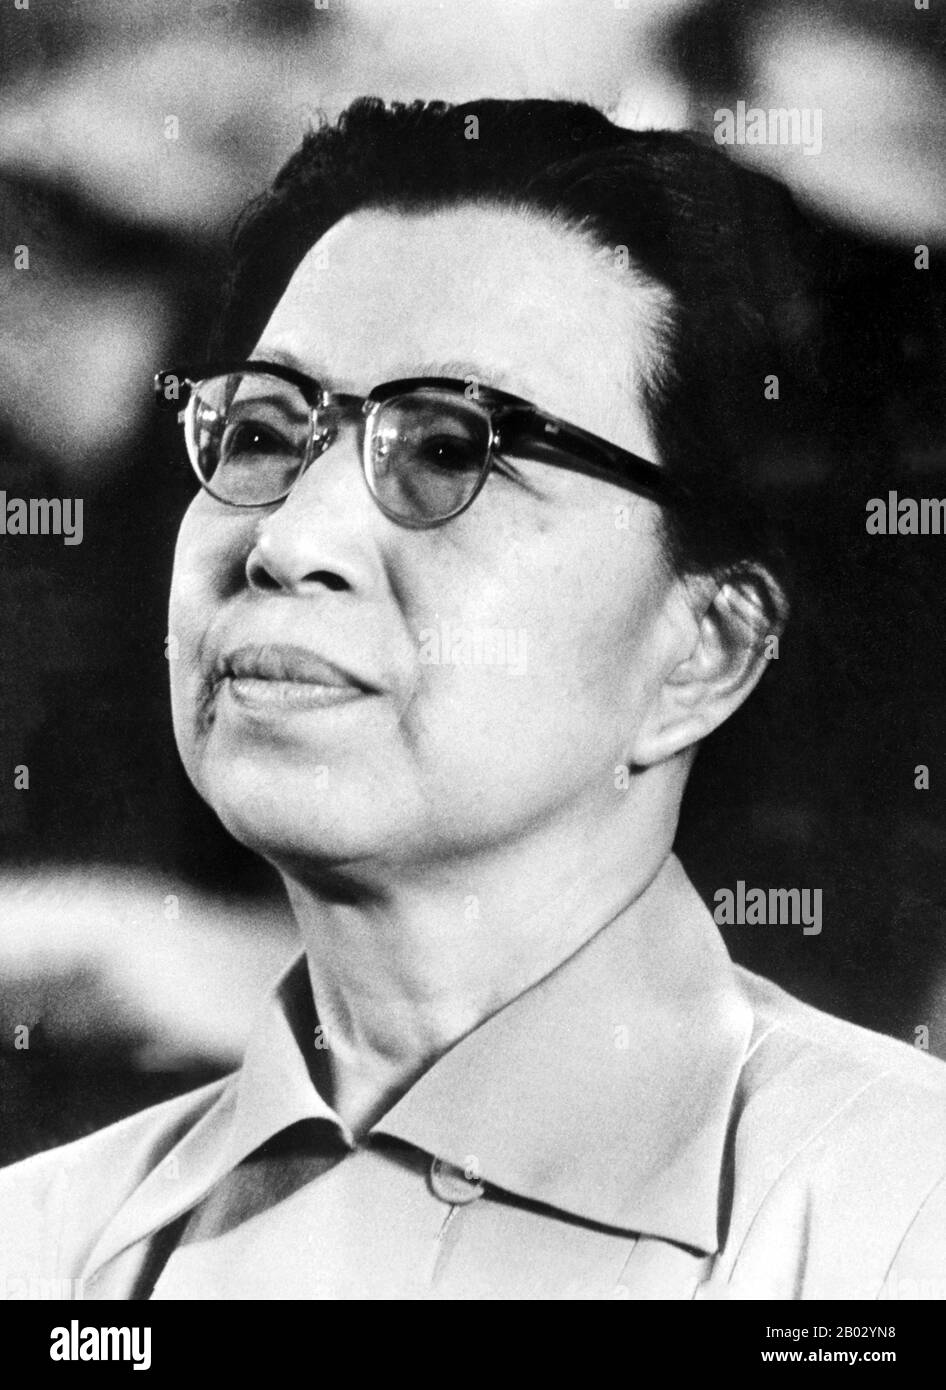 Jiang Qing (Chiang ch'ing, mars 1914 – 14 mai 1991) était le pseudonyme utilisé par la dernière femme du leader chinois Mao Zedong et le principal personnage du parti communiste chinois. Elle est allée par Le nom de scène Lan Ping pendant sa carrière intérimaire, et a été connue par divers autres noms pendant sa vie. Elle a épousé Mao à Yan en novembre 1938, et est parfois appelée Madame Mao dans la littérature occidentale, servant de première dame de la Chine communiste. Jiang Qing était plus connu pour avoir joué un rôle majeur dans la Révolution culturelle (1966–1976) et pour former l'alliance politique radicale connue sous le nom de Banque D'Images